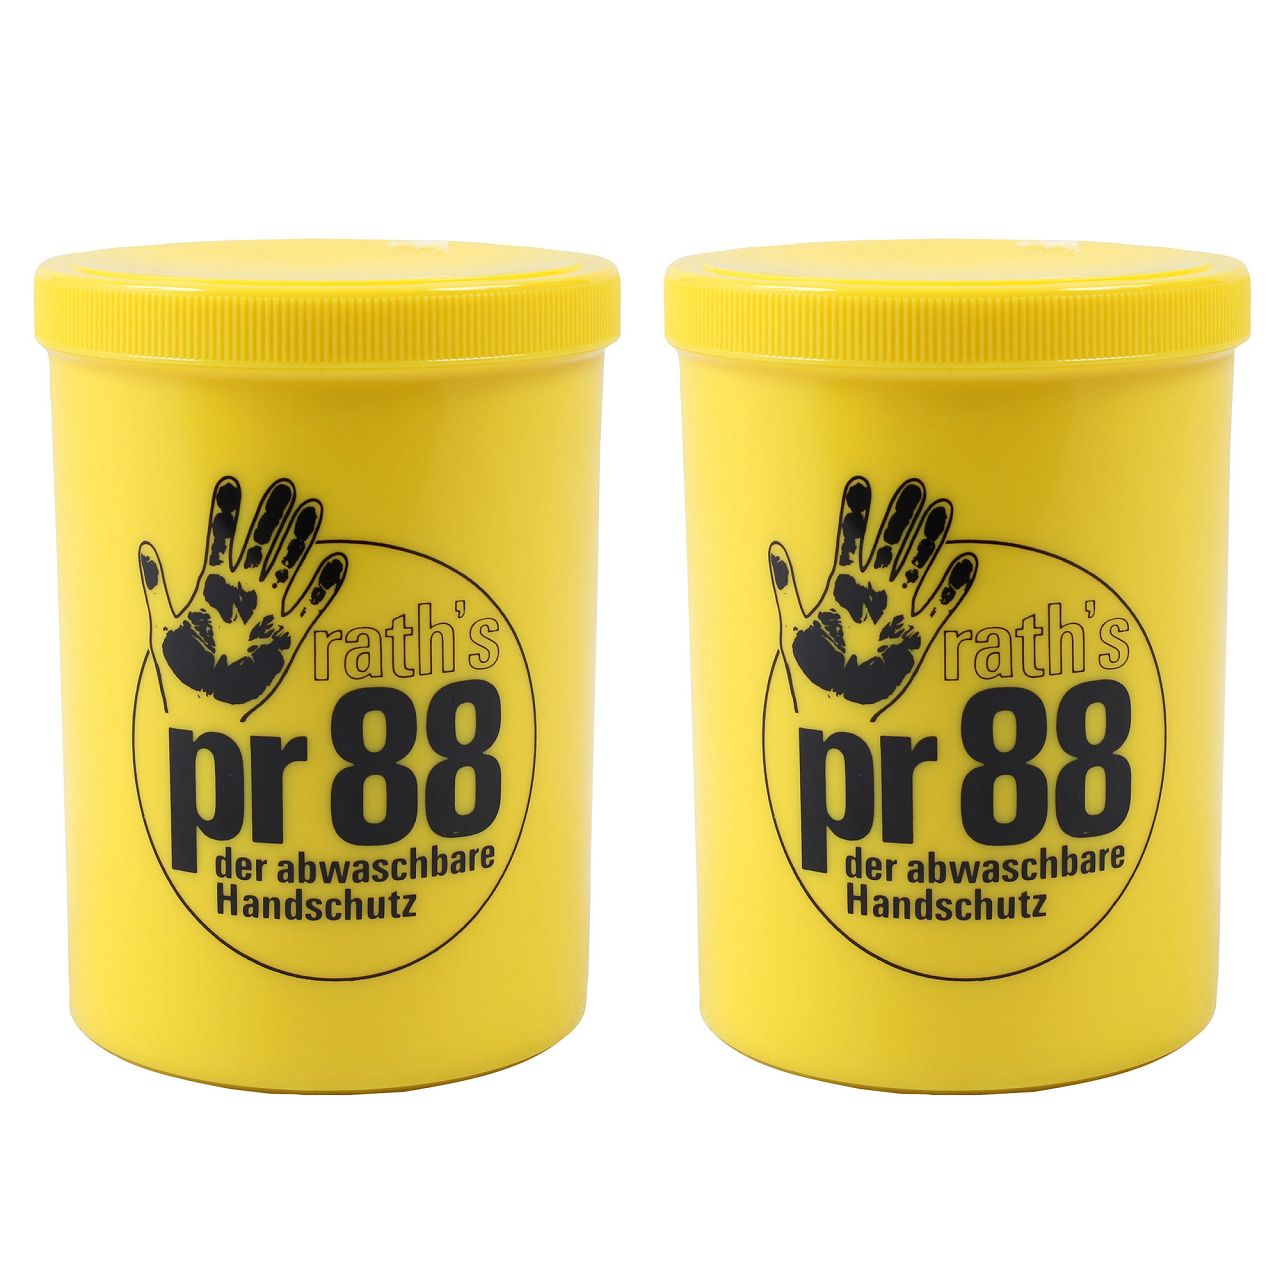 2x 1L 1 Liter RATH's Creme PR 88 Hautschutz der abwaschbare Handschuh Handcreme